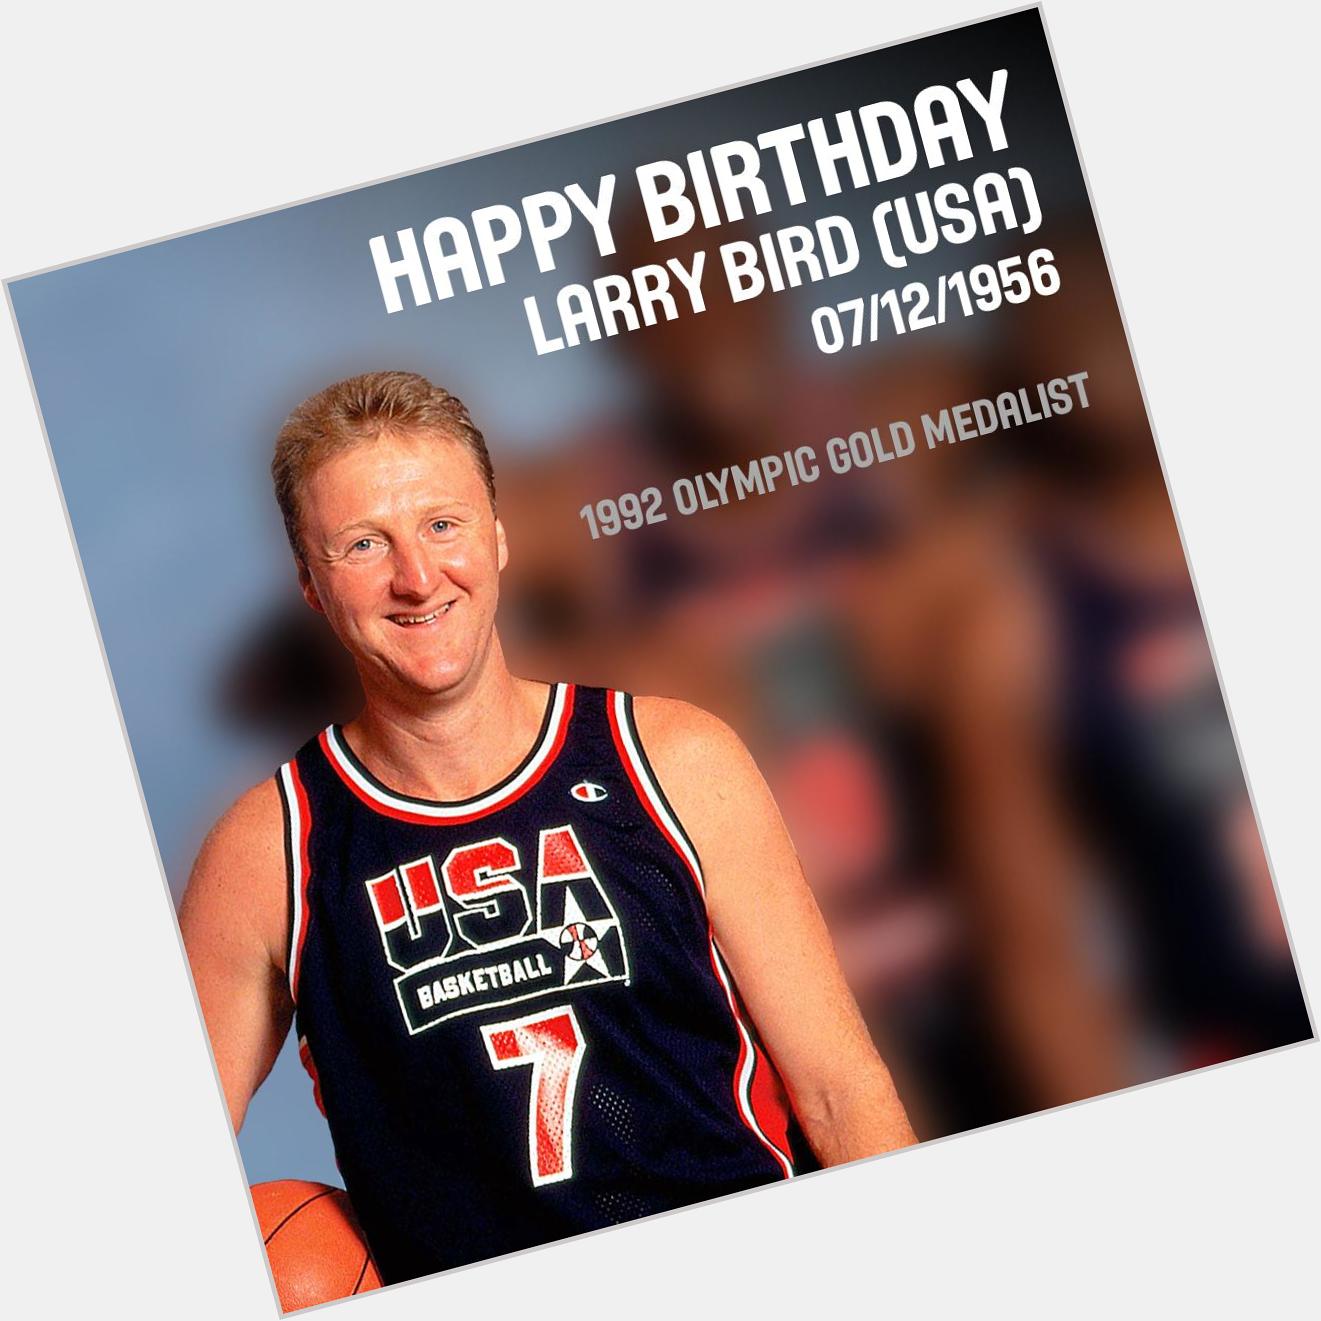      Happy birthday Larry Bird! 